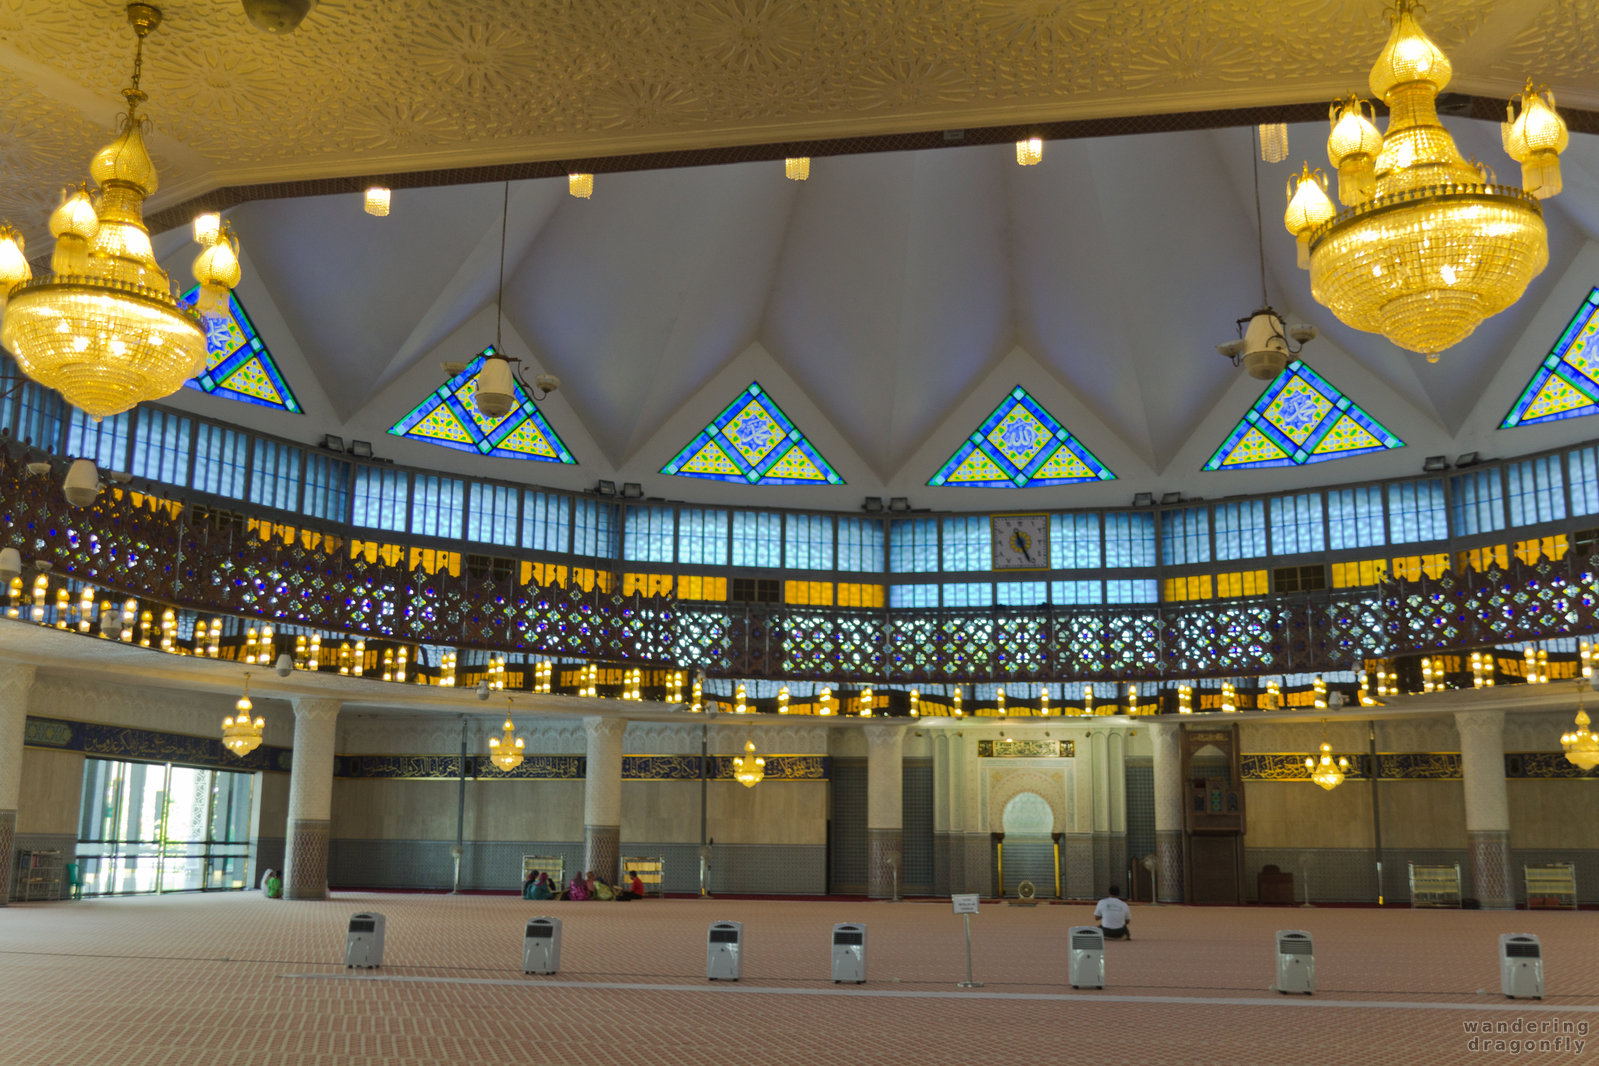 Prayer hall -- chandelier, mosque, prayer